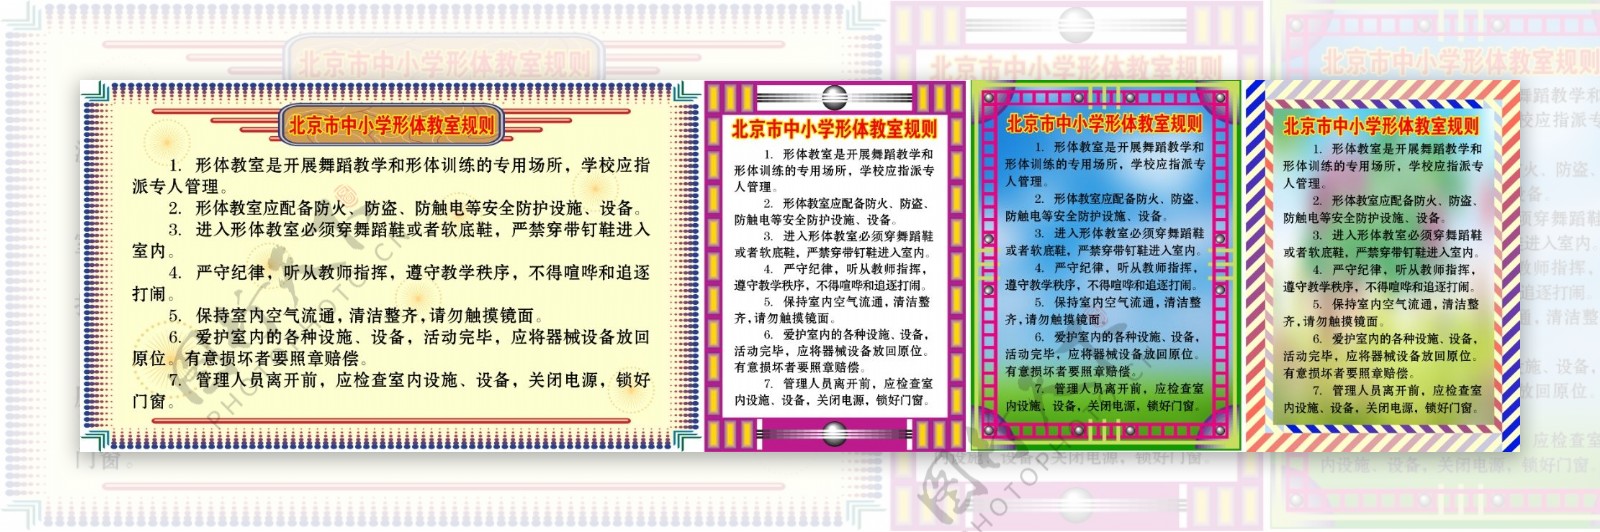 北京市中小学教室规则图片